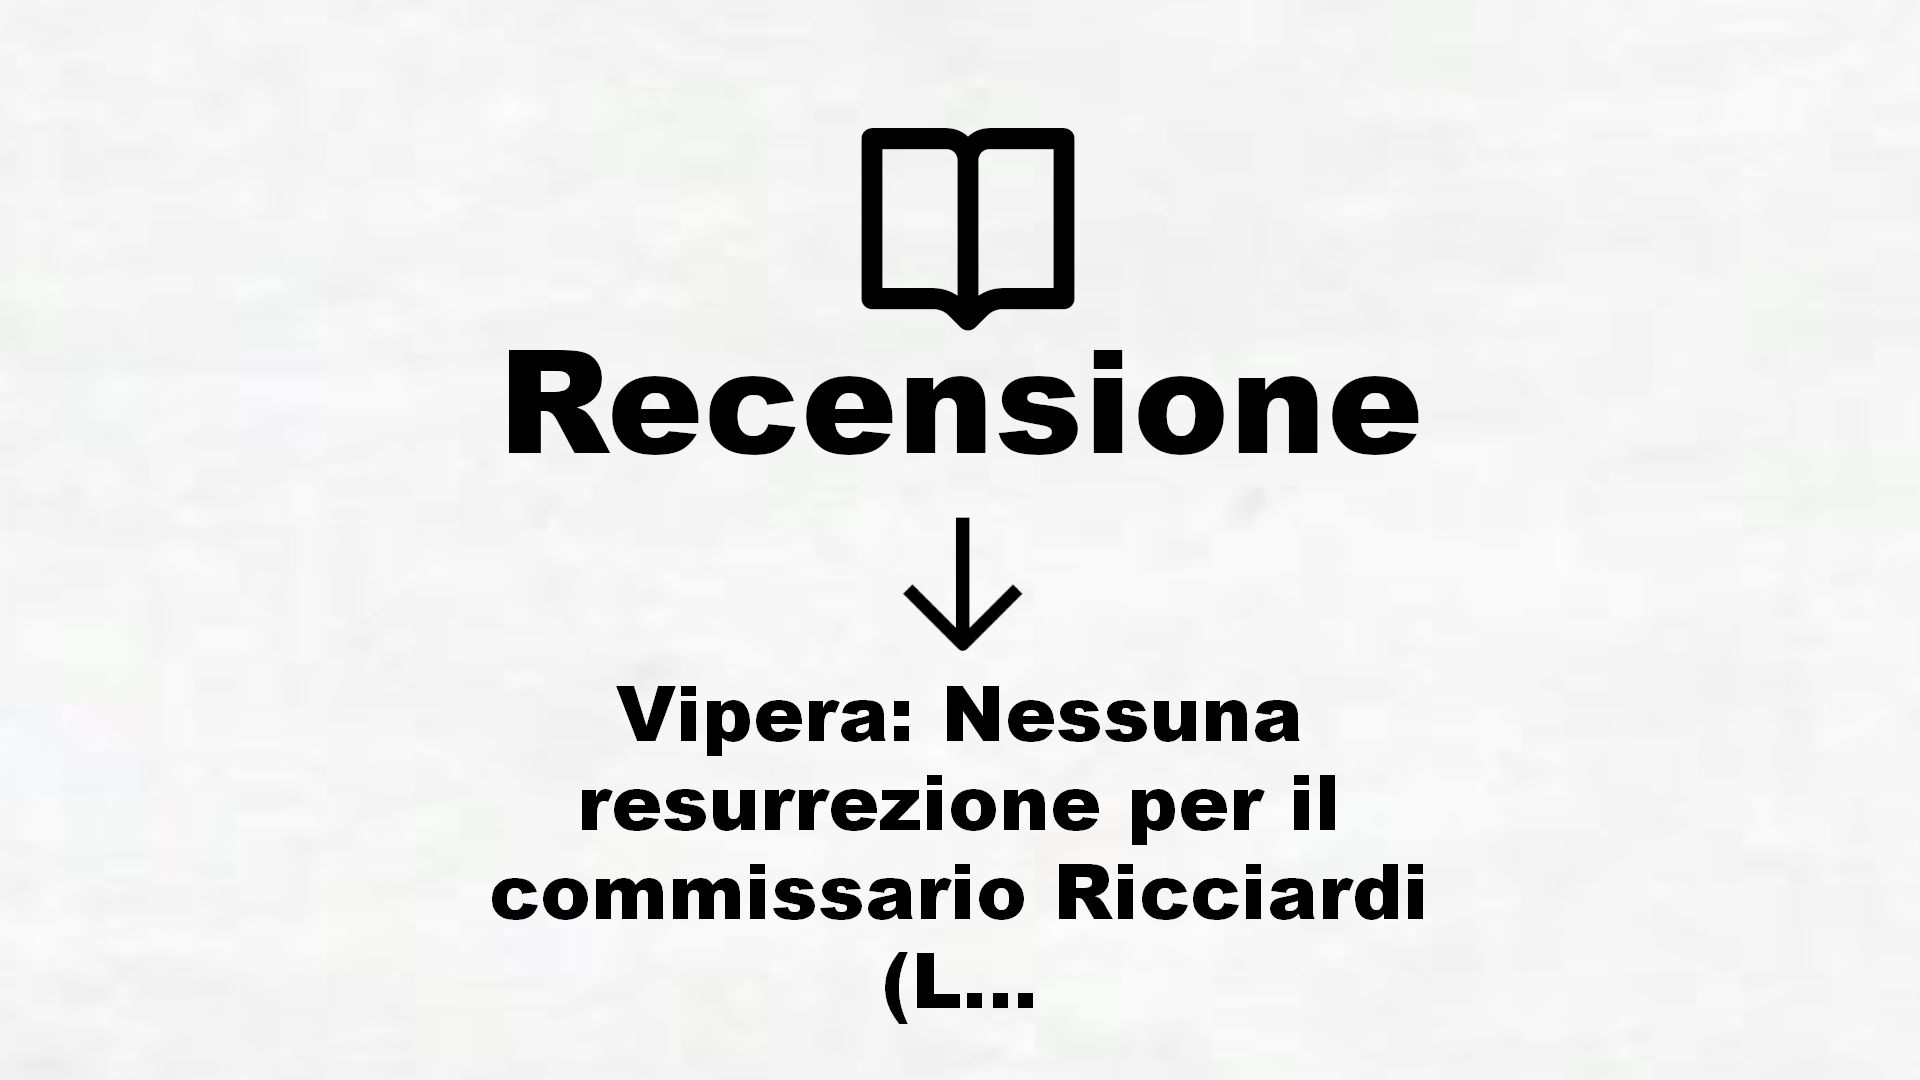 Vipera: Nessuna resurrezione per il commissario Ricciardi (Le indagini del commissario Ricciardi Vol. 7) – Recensione Libro